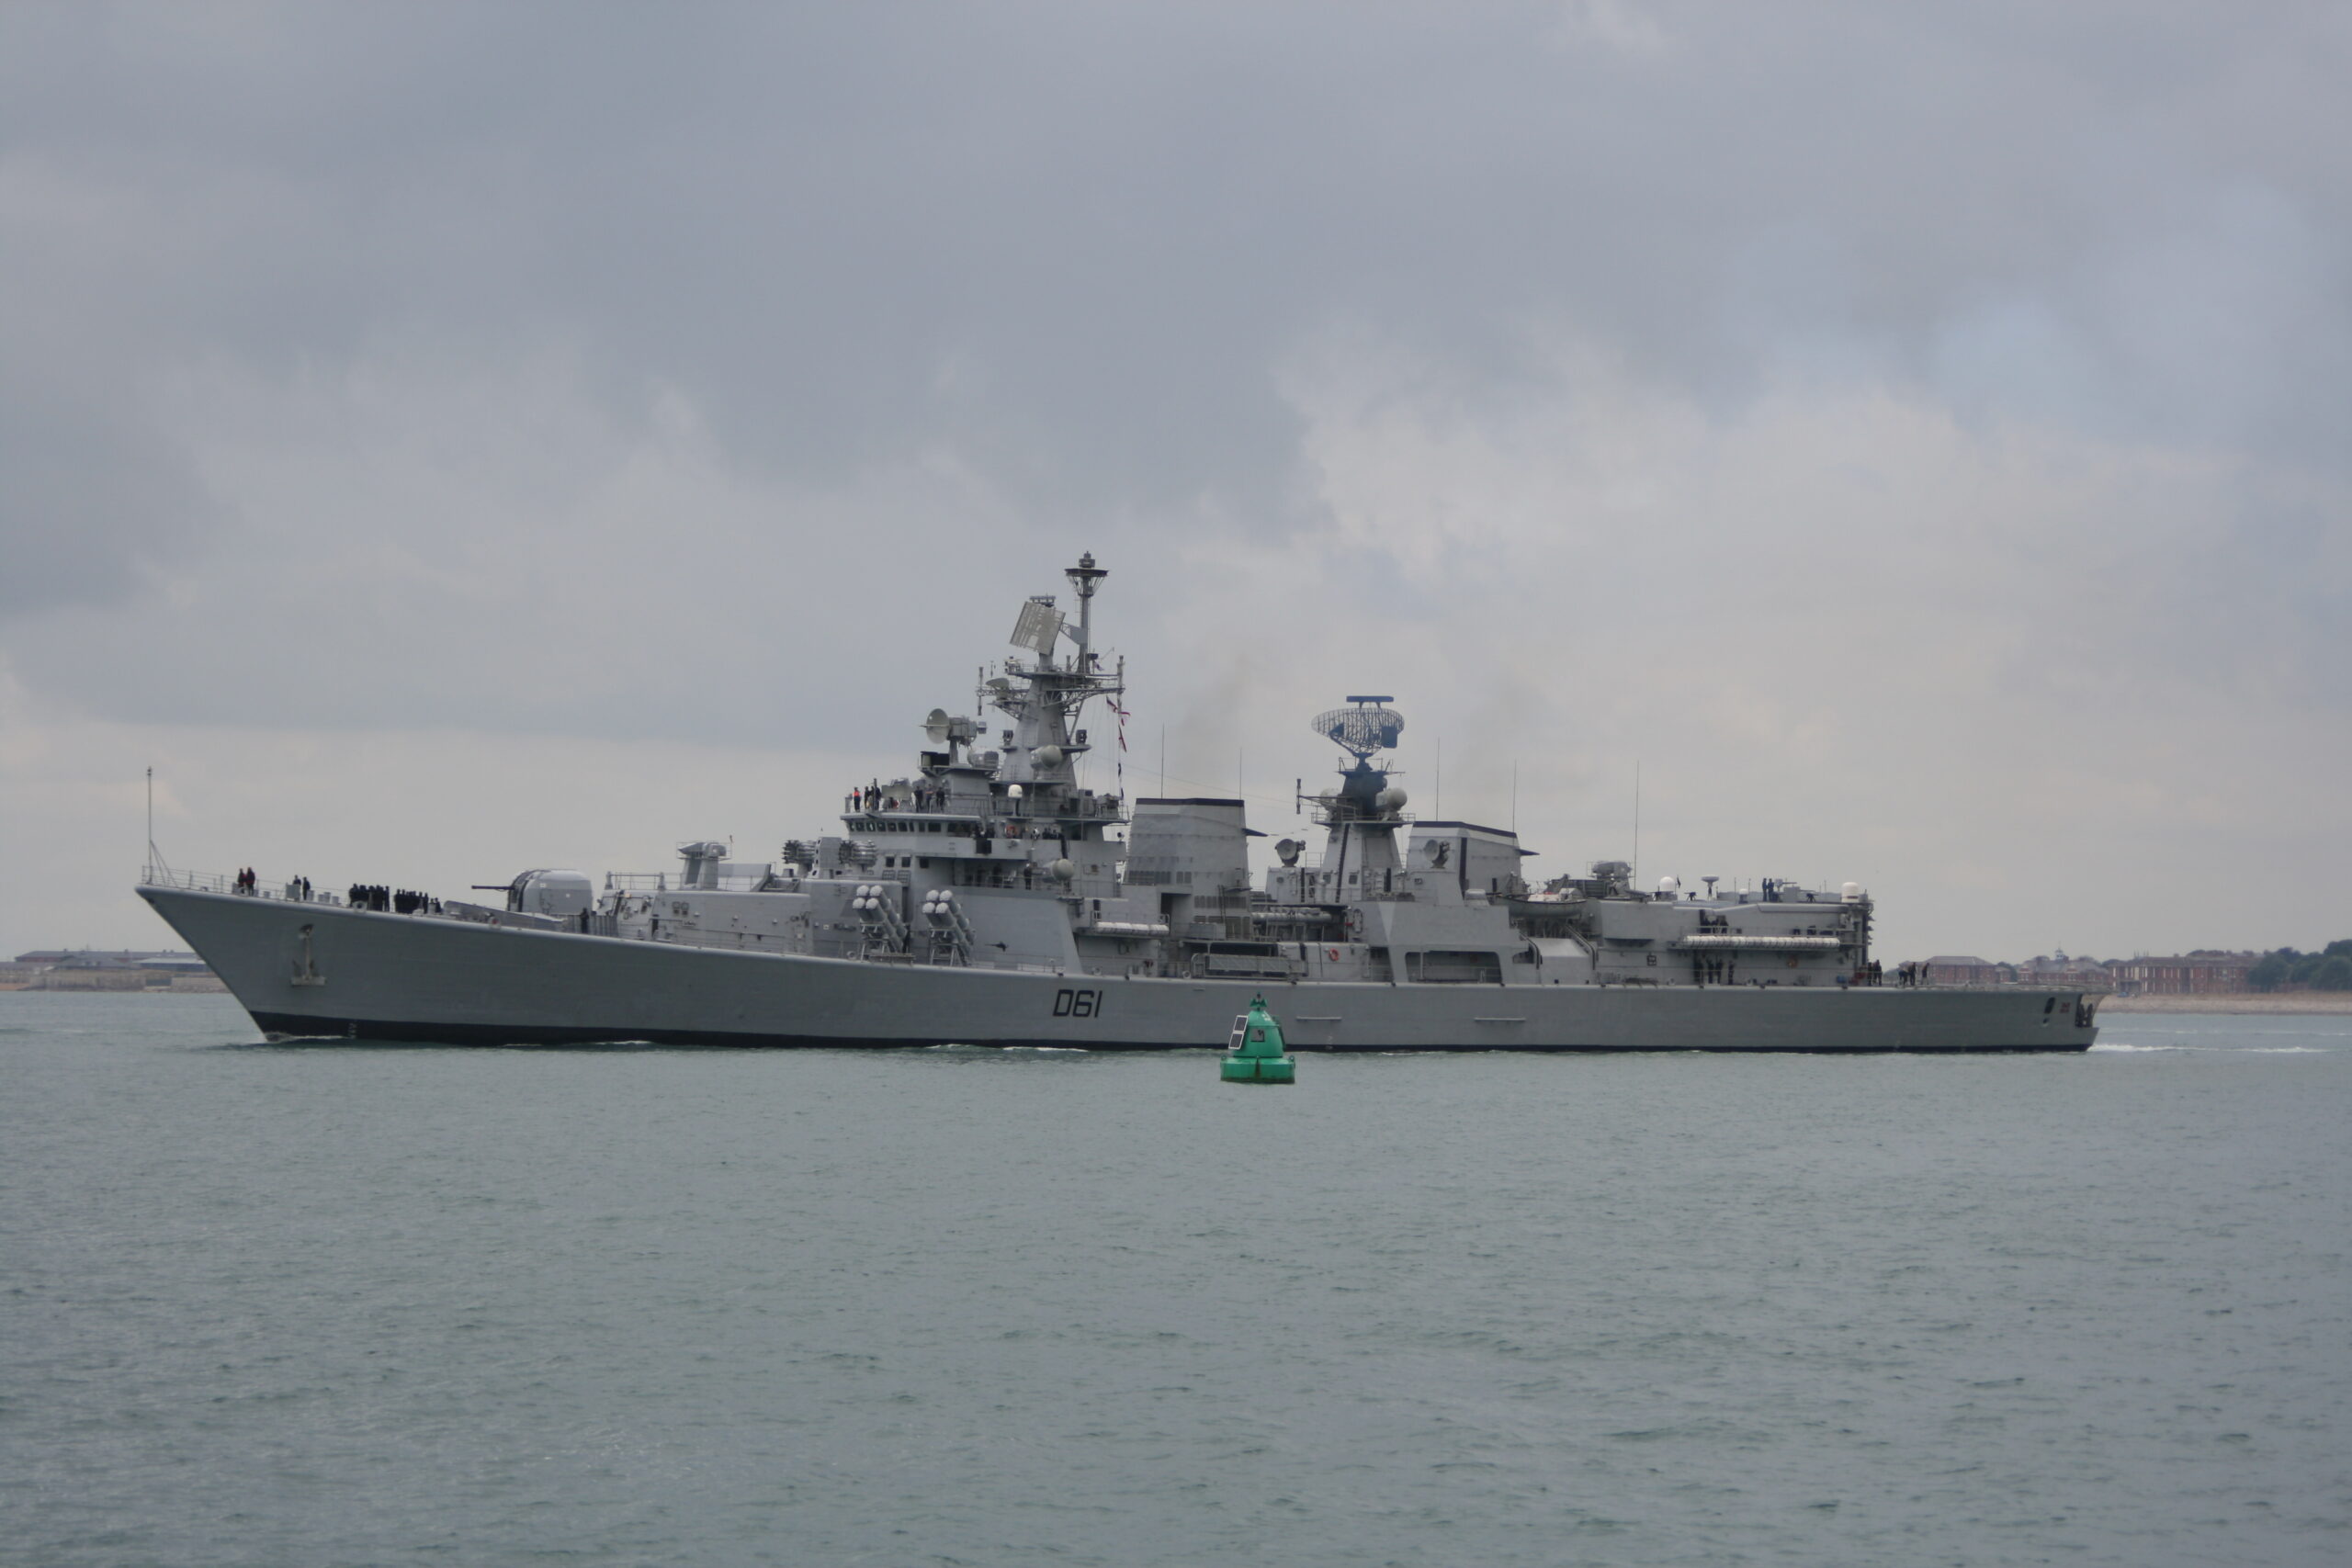 L’India invia navi nel Mar Cinese. Ecco perché